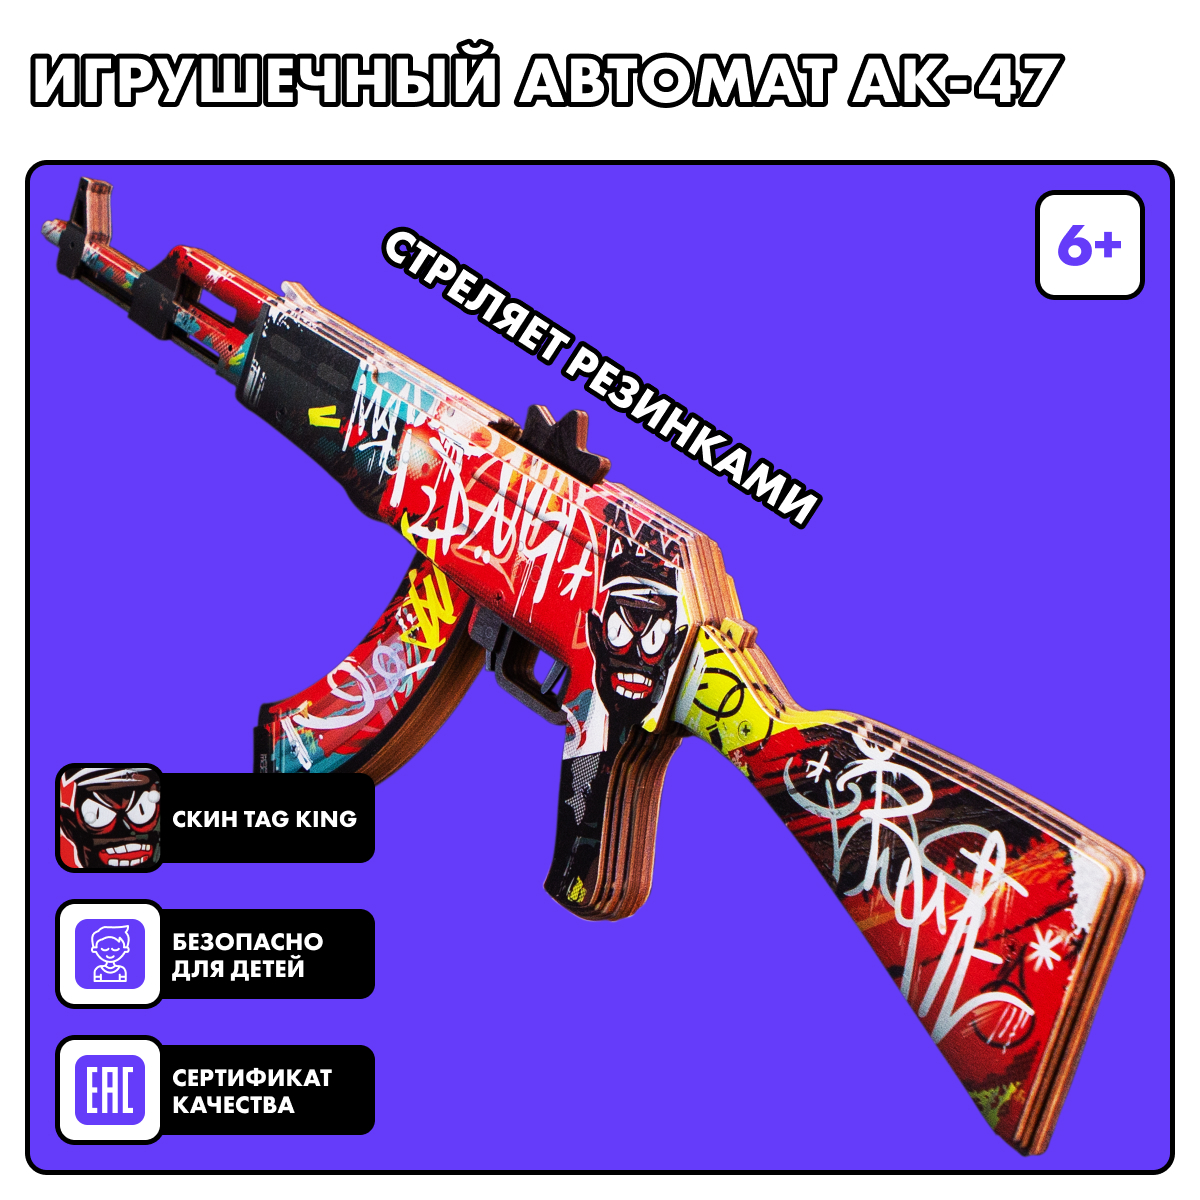 Резинкострел игрушечный Geekroom Деревянный автомат АК-47 Tag king